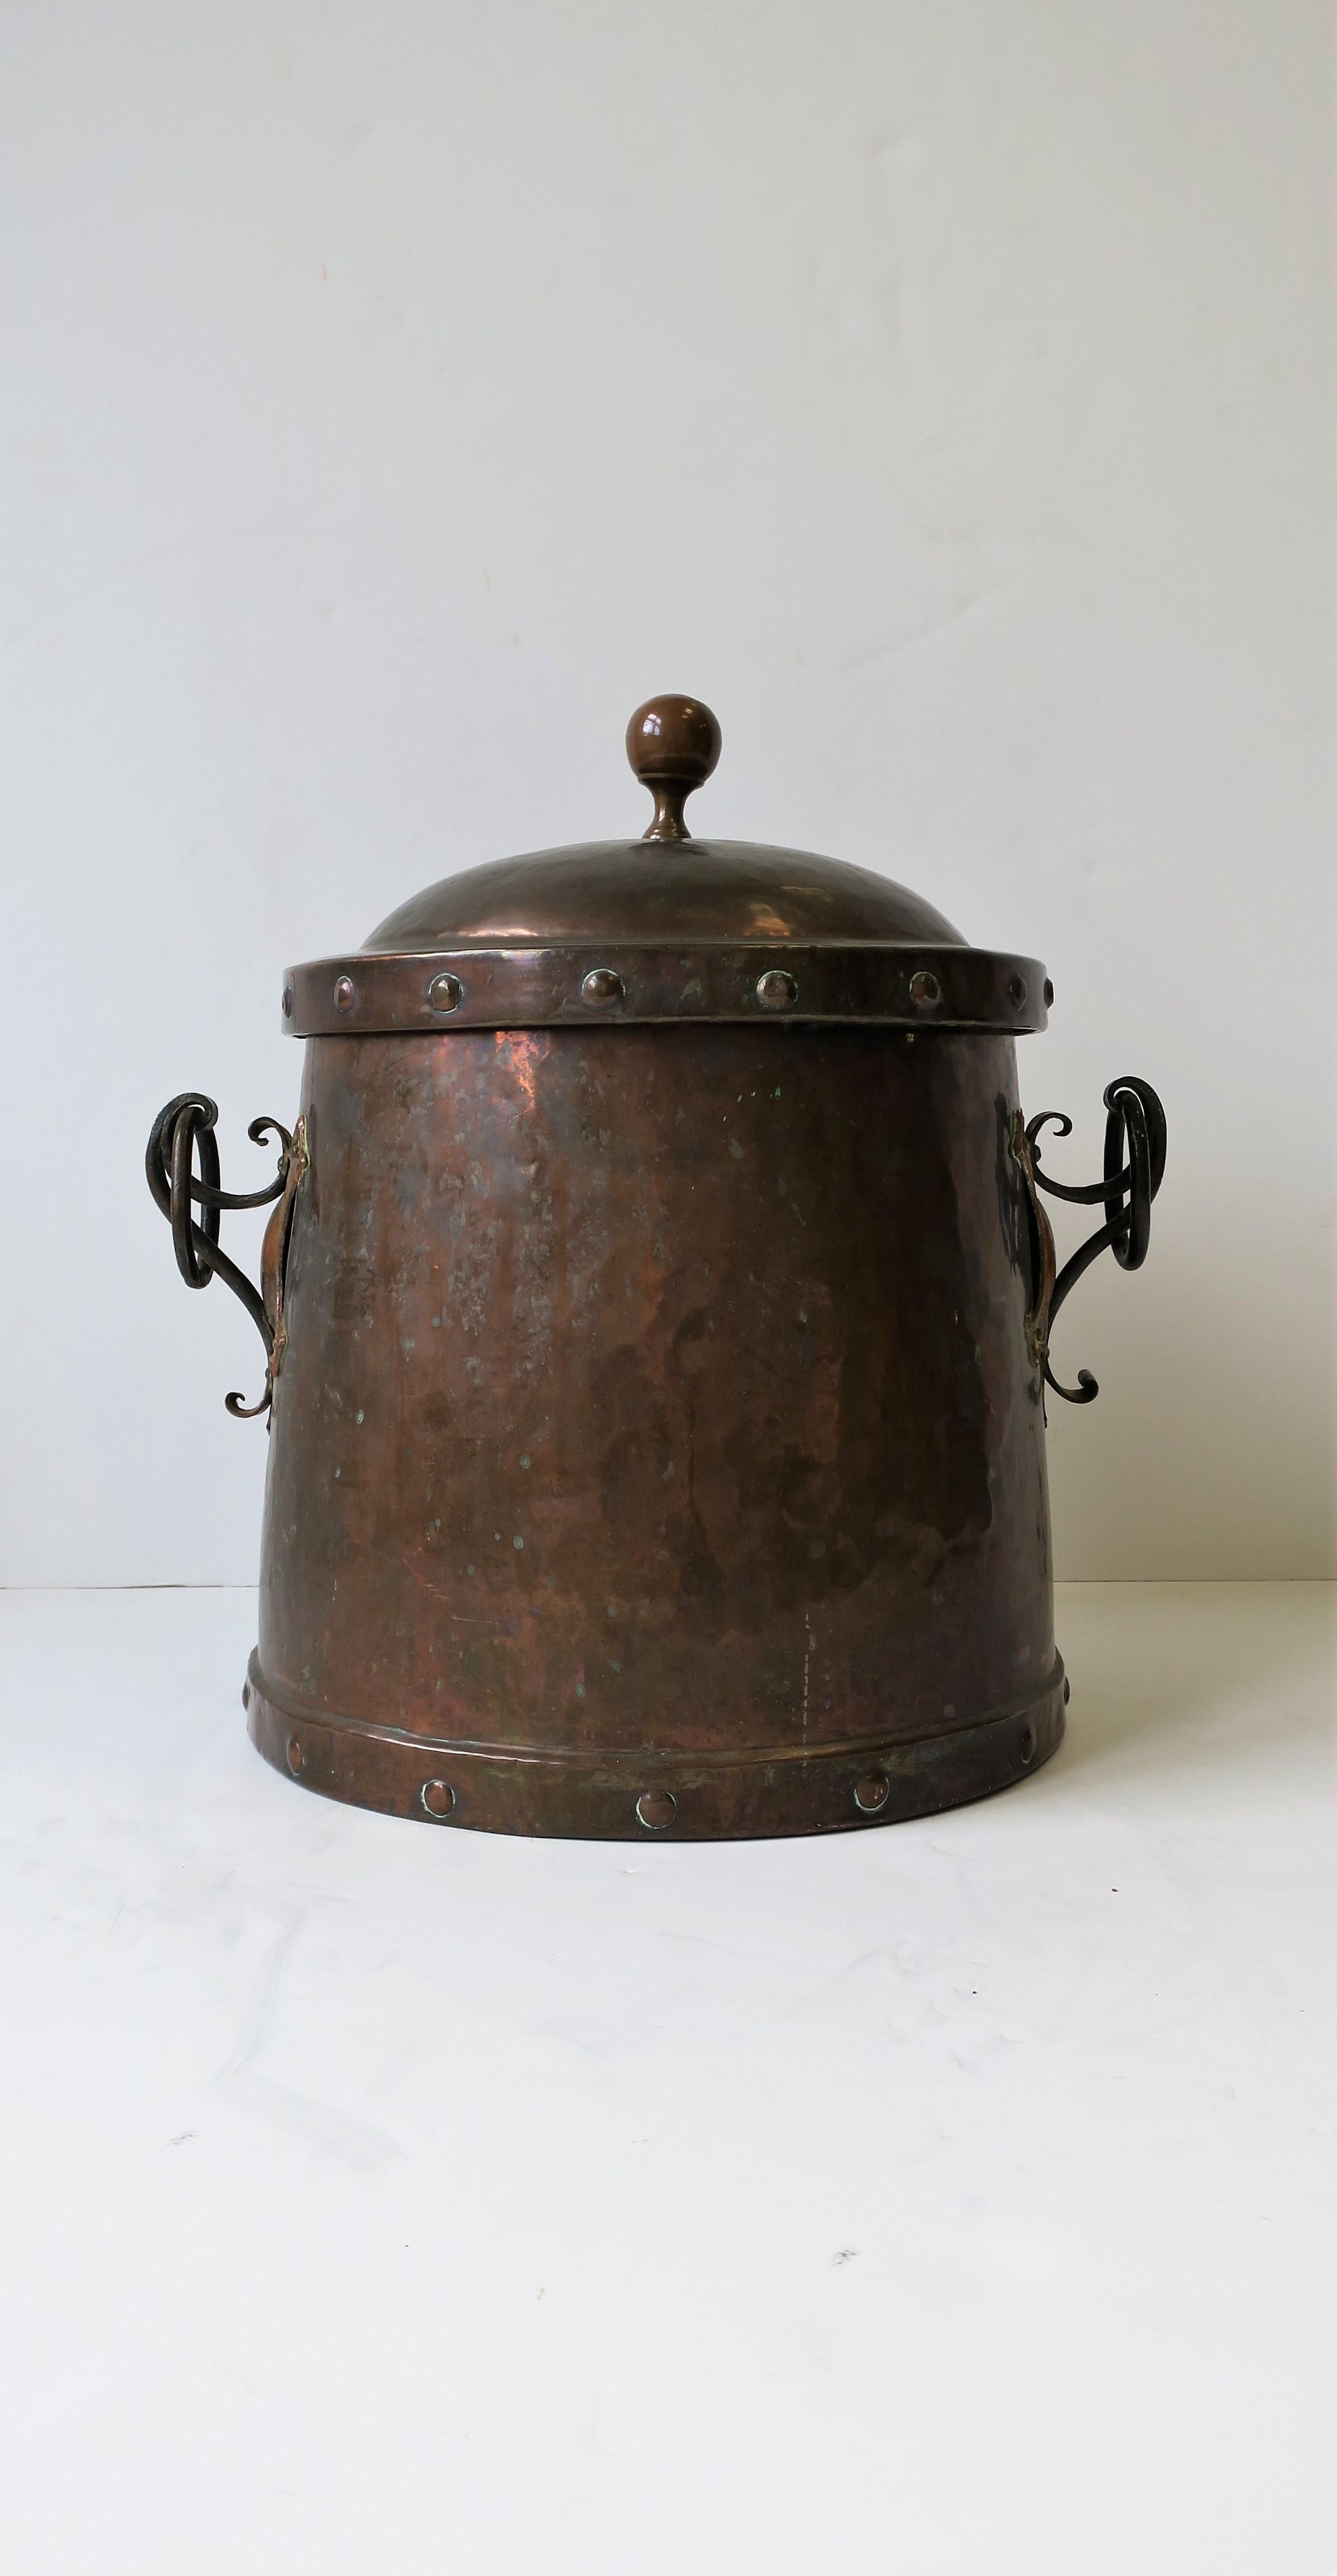 Un magnifique et substantiel pot de cheminée en cuivre et bronze de style Arts & Crafts avec couvercle. Le pot/seau est orné d'un motif de rivets et d'un fleuron rond sur le dessus, de magnifiques détails médiévaux, d'un motif de rivets à la base et